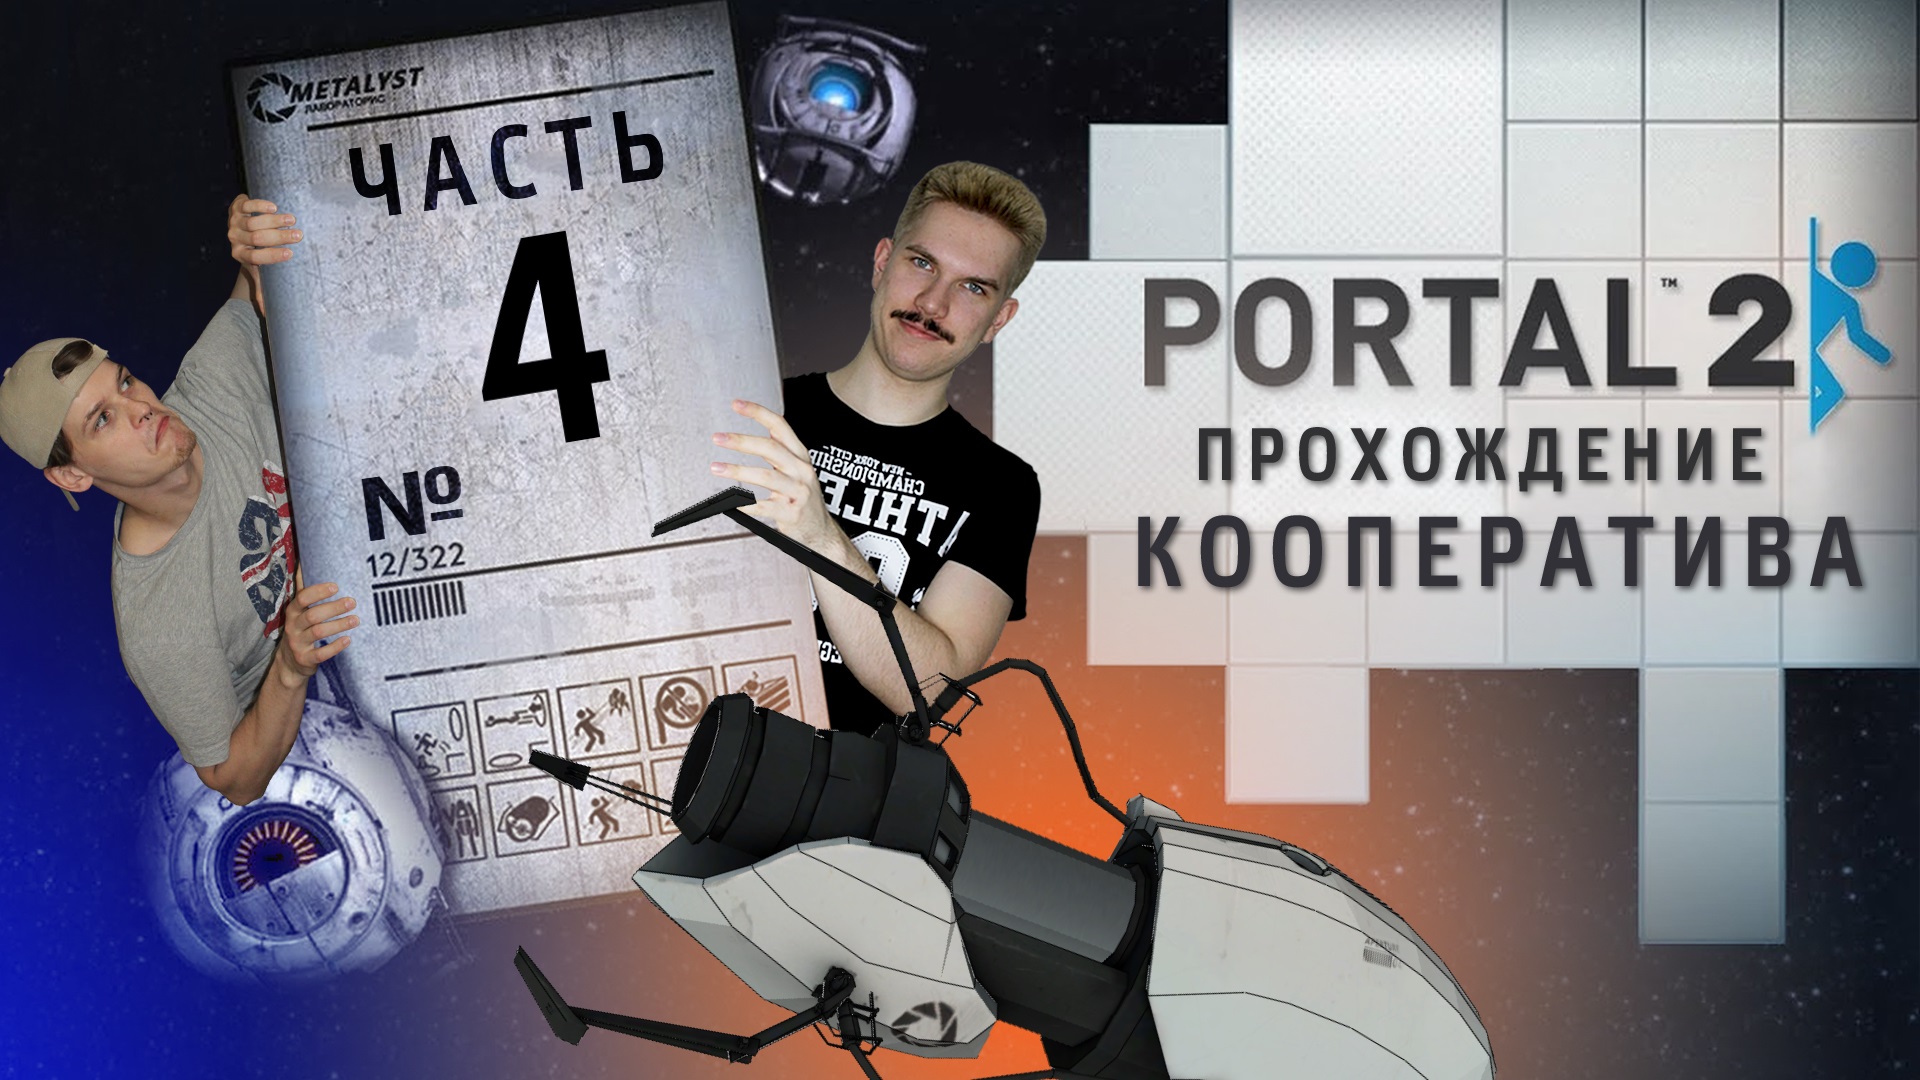 Portal 2 играем в кооператив на пиратке фото 112